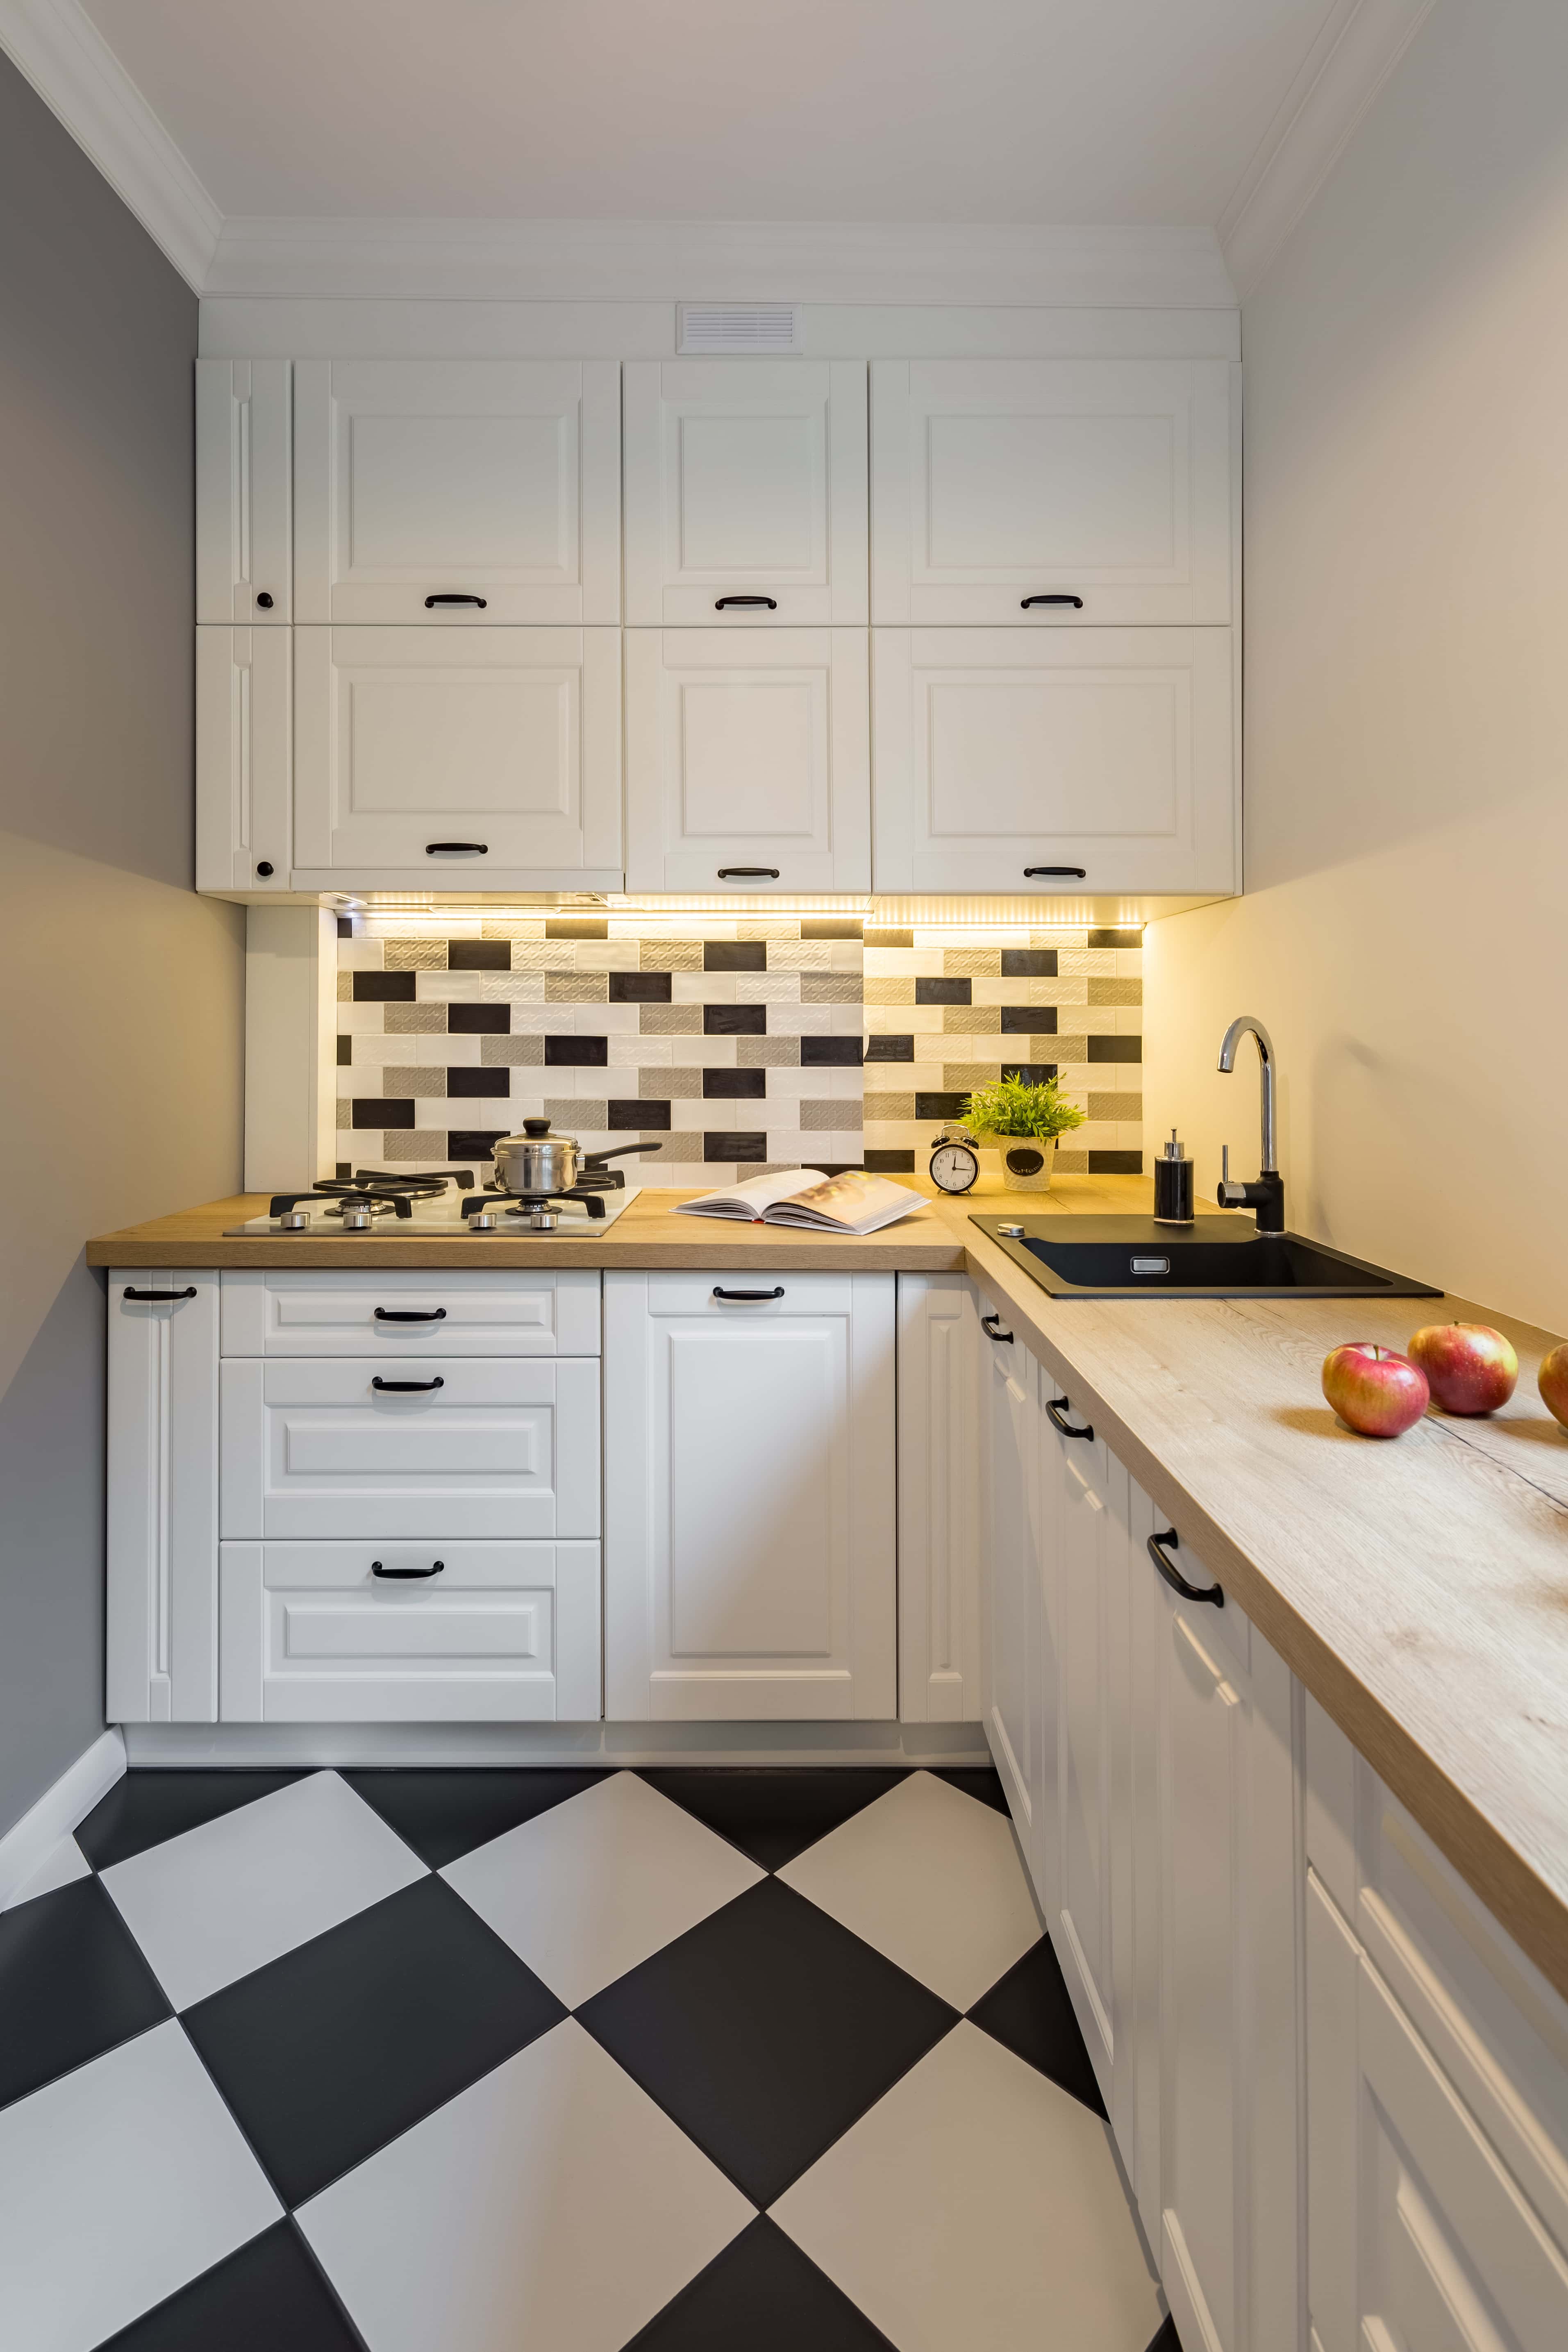 kuchni pavimento cucina galley remont modernas homelane piastrelle assoalho telhas cozinha kuchnia pequeña nowa od shelves